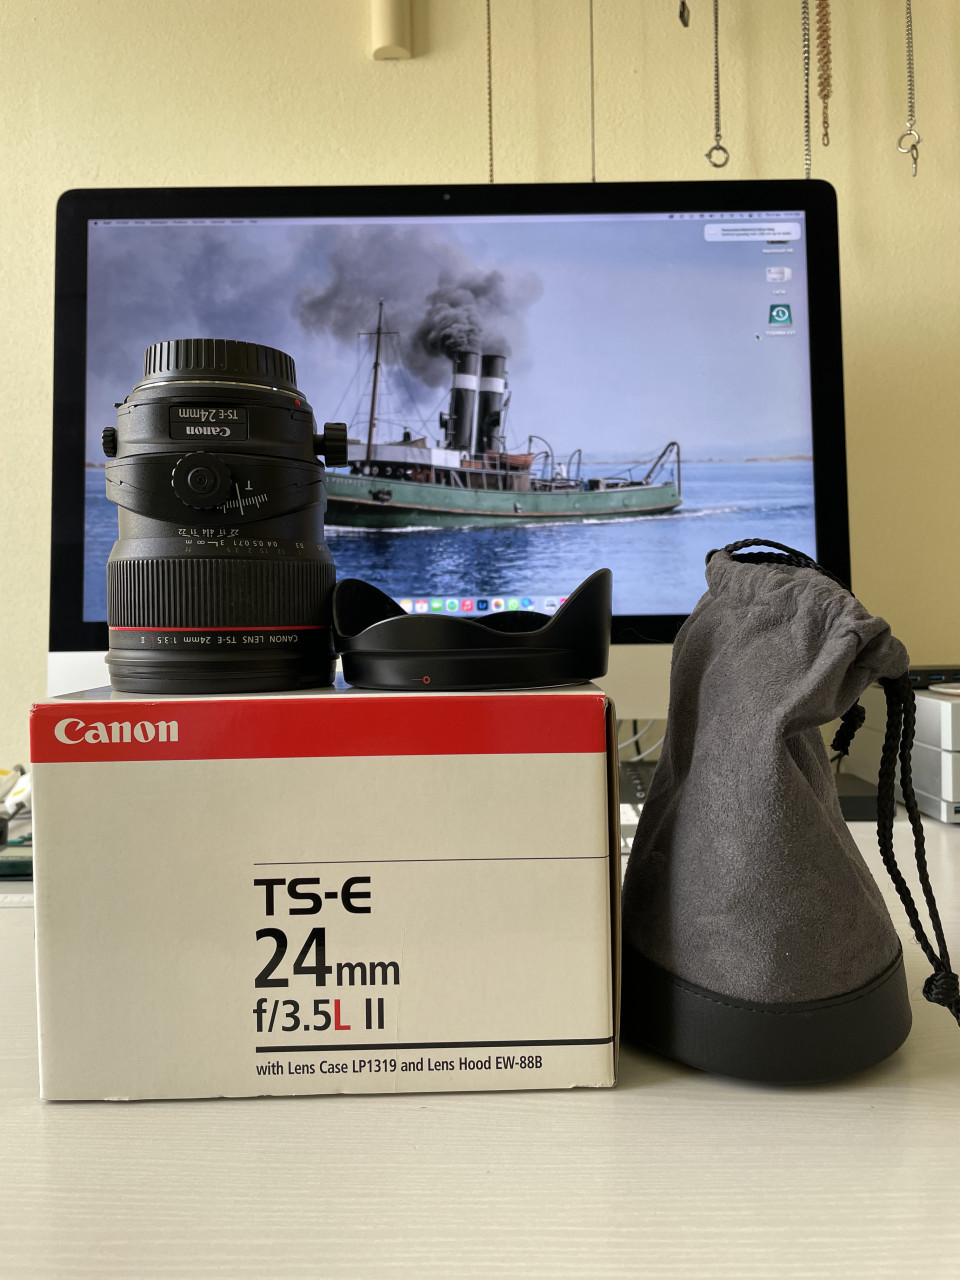 Canon Tilt & Shift lens